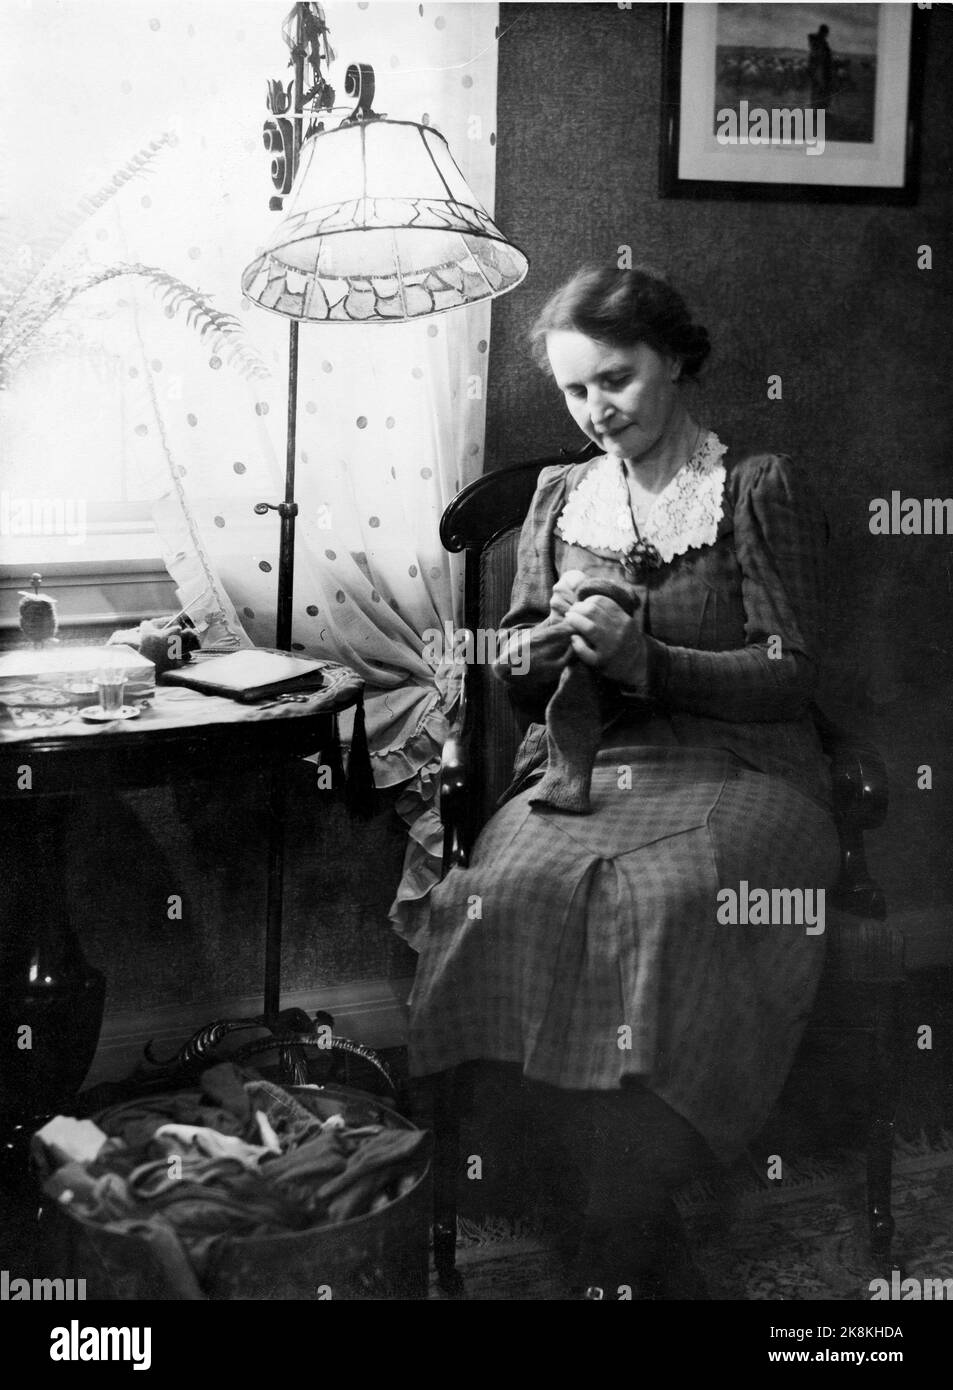 Oslo ca. 1930 - altmodisch. Ältere Frau sitzt und hält Strümpfe unter einer Stahllampe an. Hausarbeit / Nadelarbeit. Foto: NTB / NTB Stockfoto